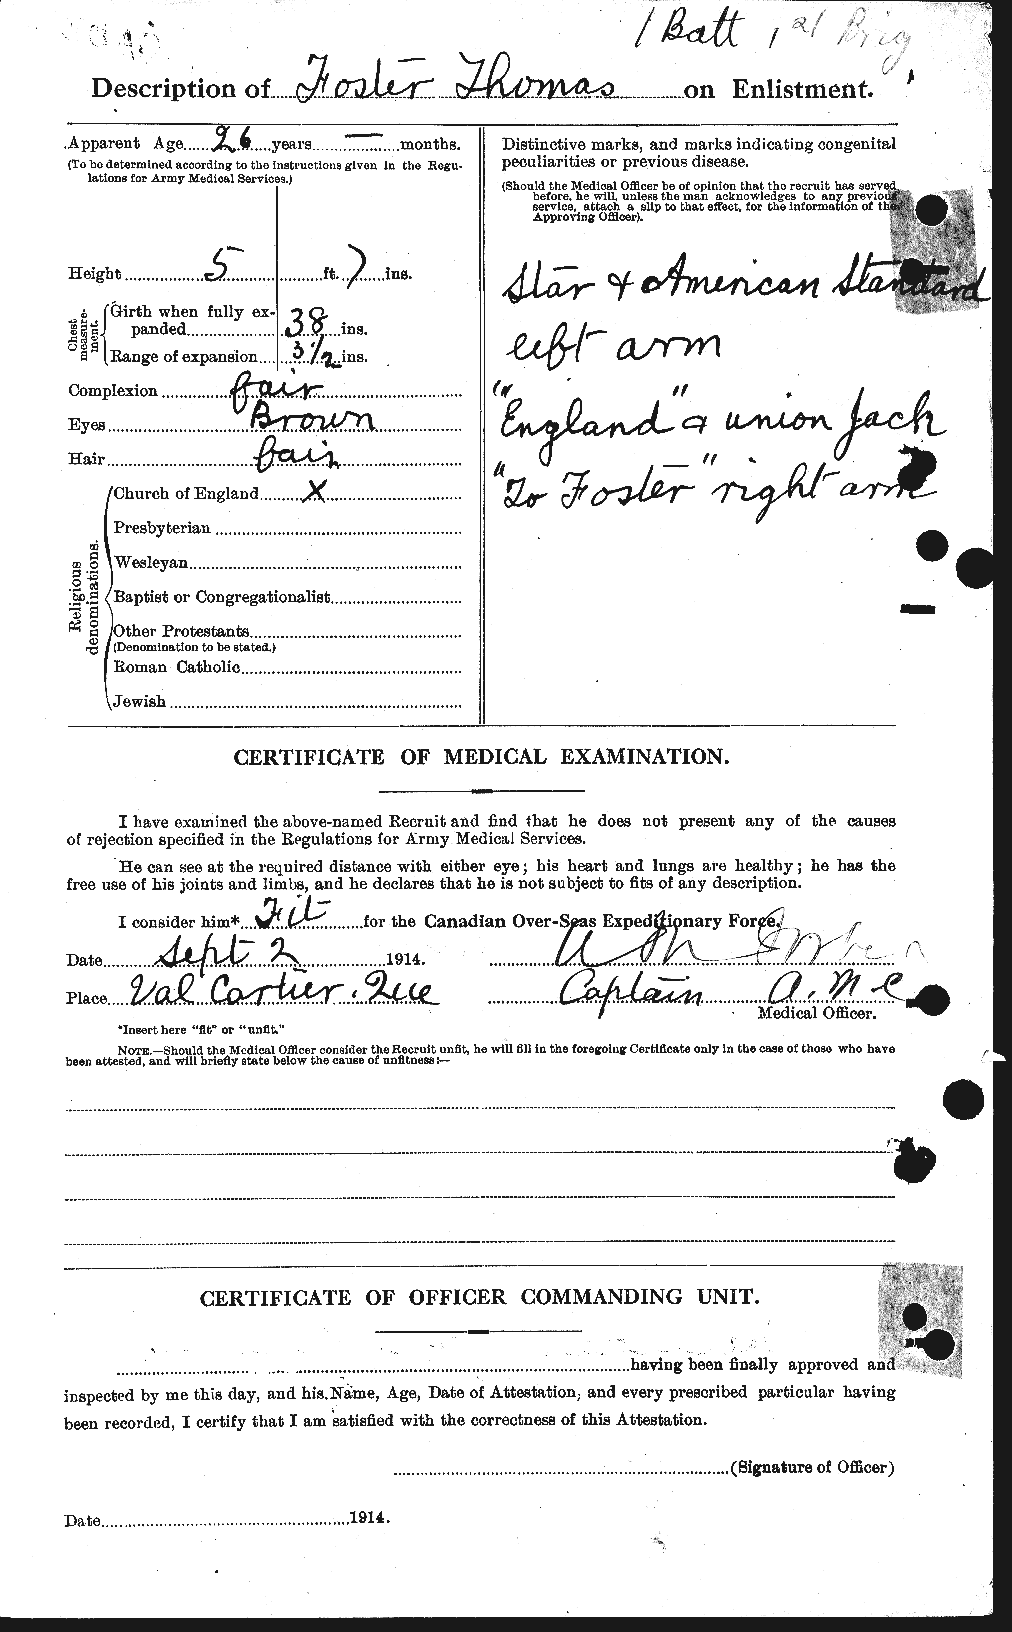 Dossiers du Personnel de la Première Guerre mondiale - CEC 335226b